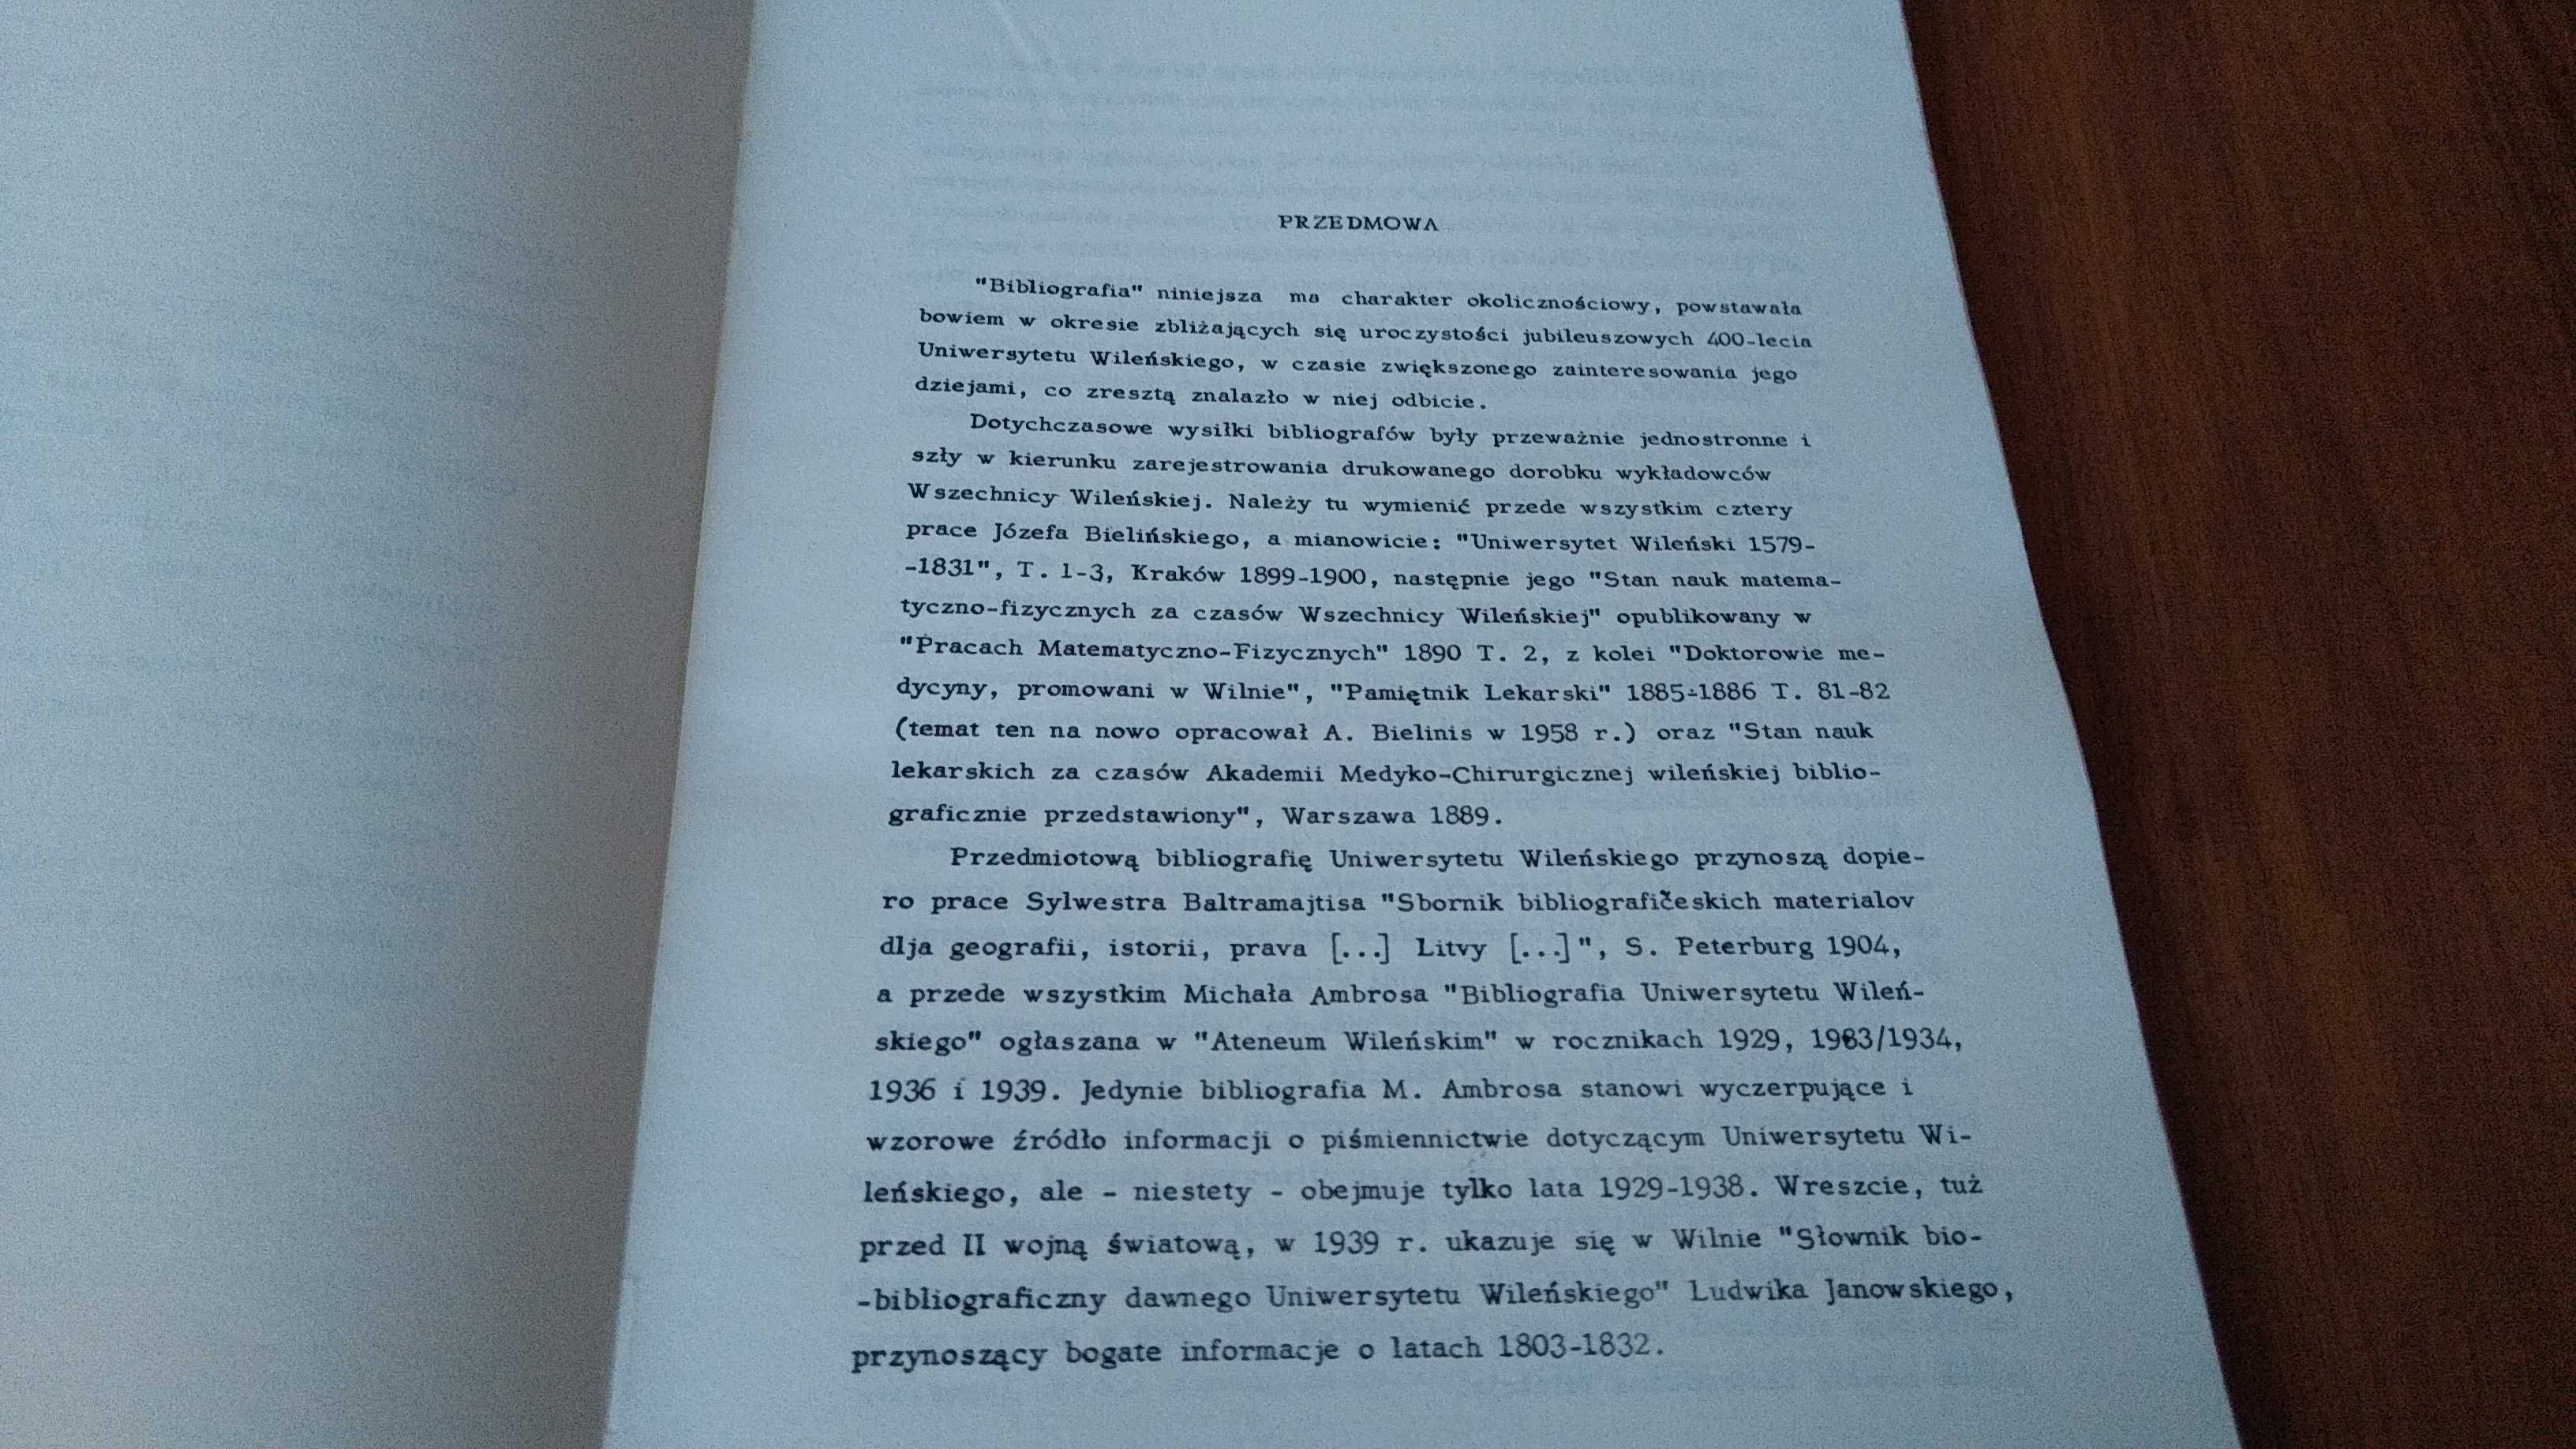 Uniwersytet Wileński 1579-:1939 bibliografia za lata 1945-:1982